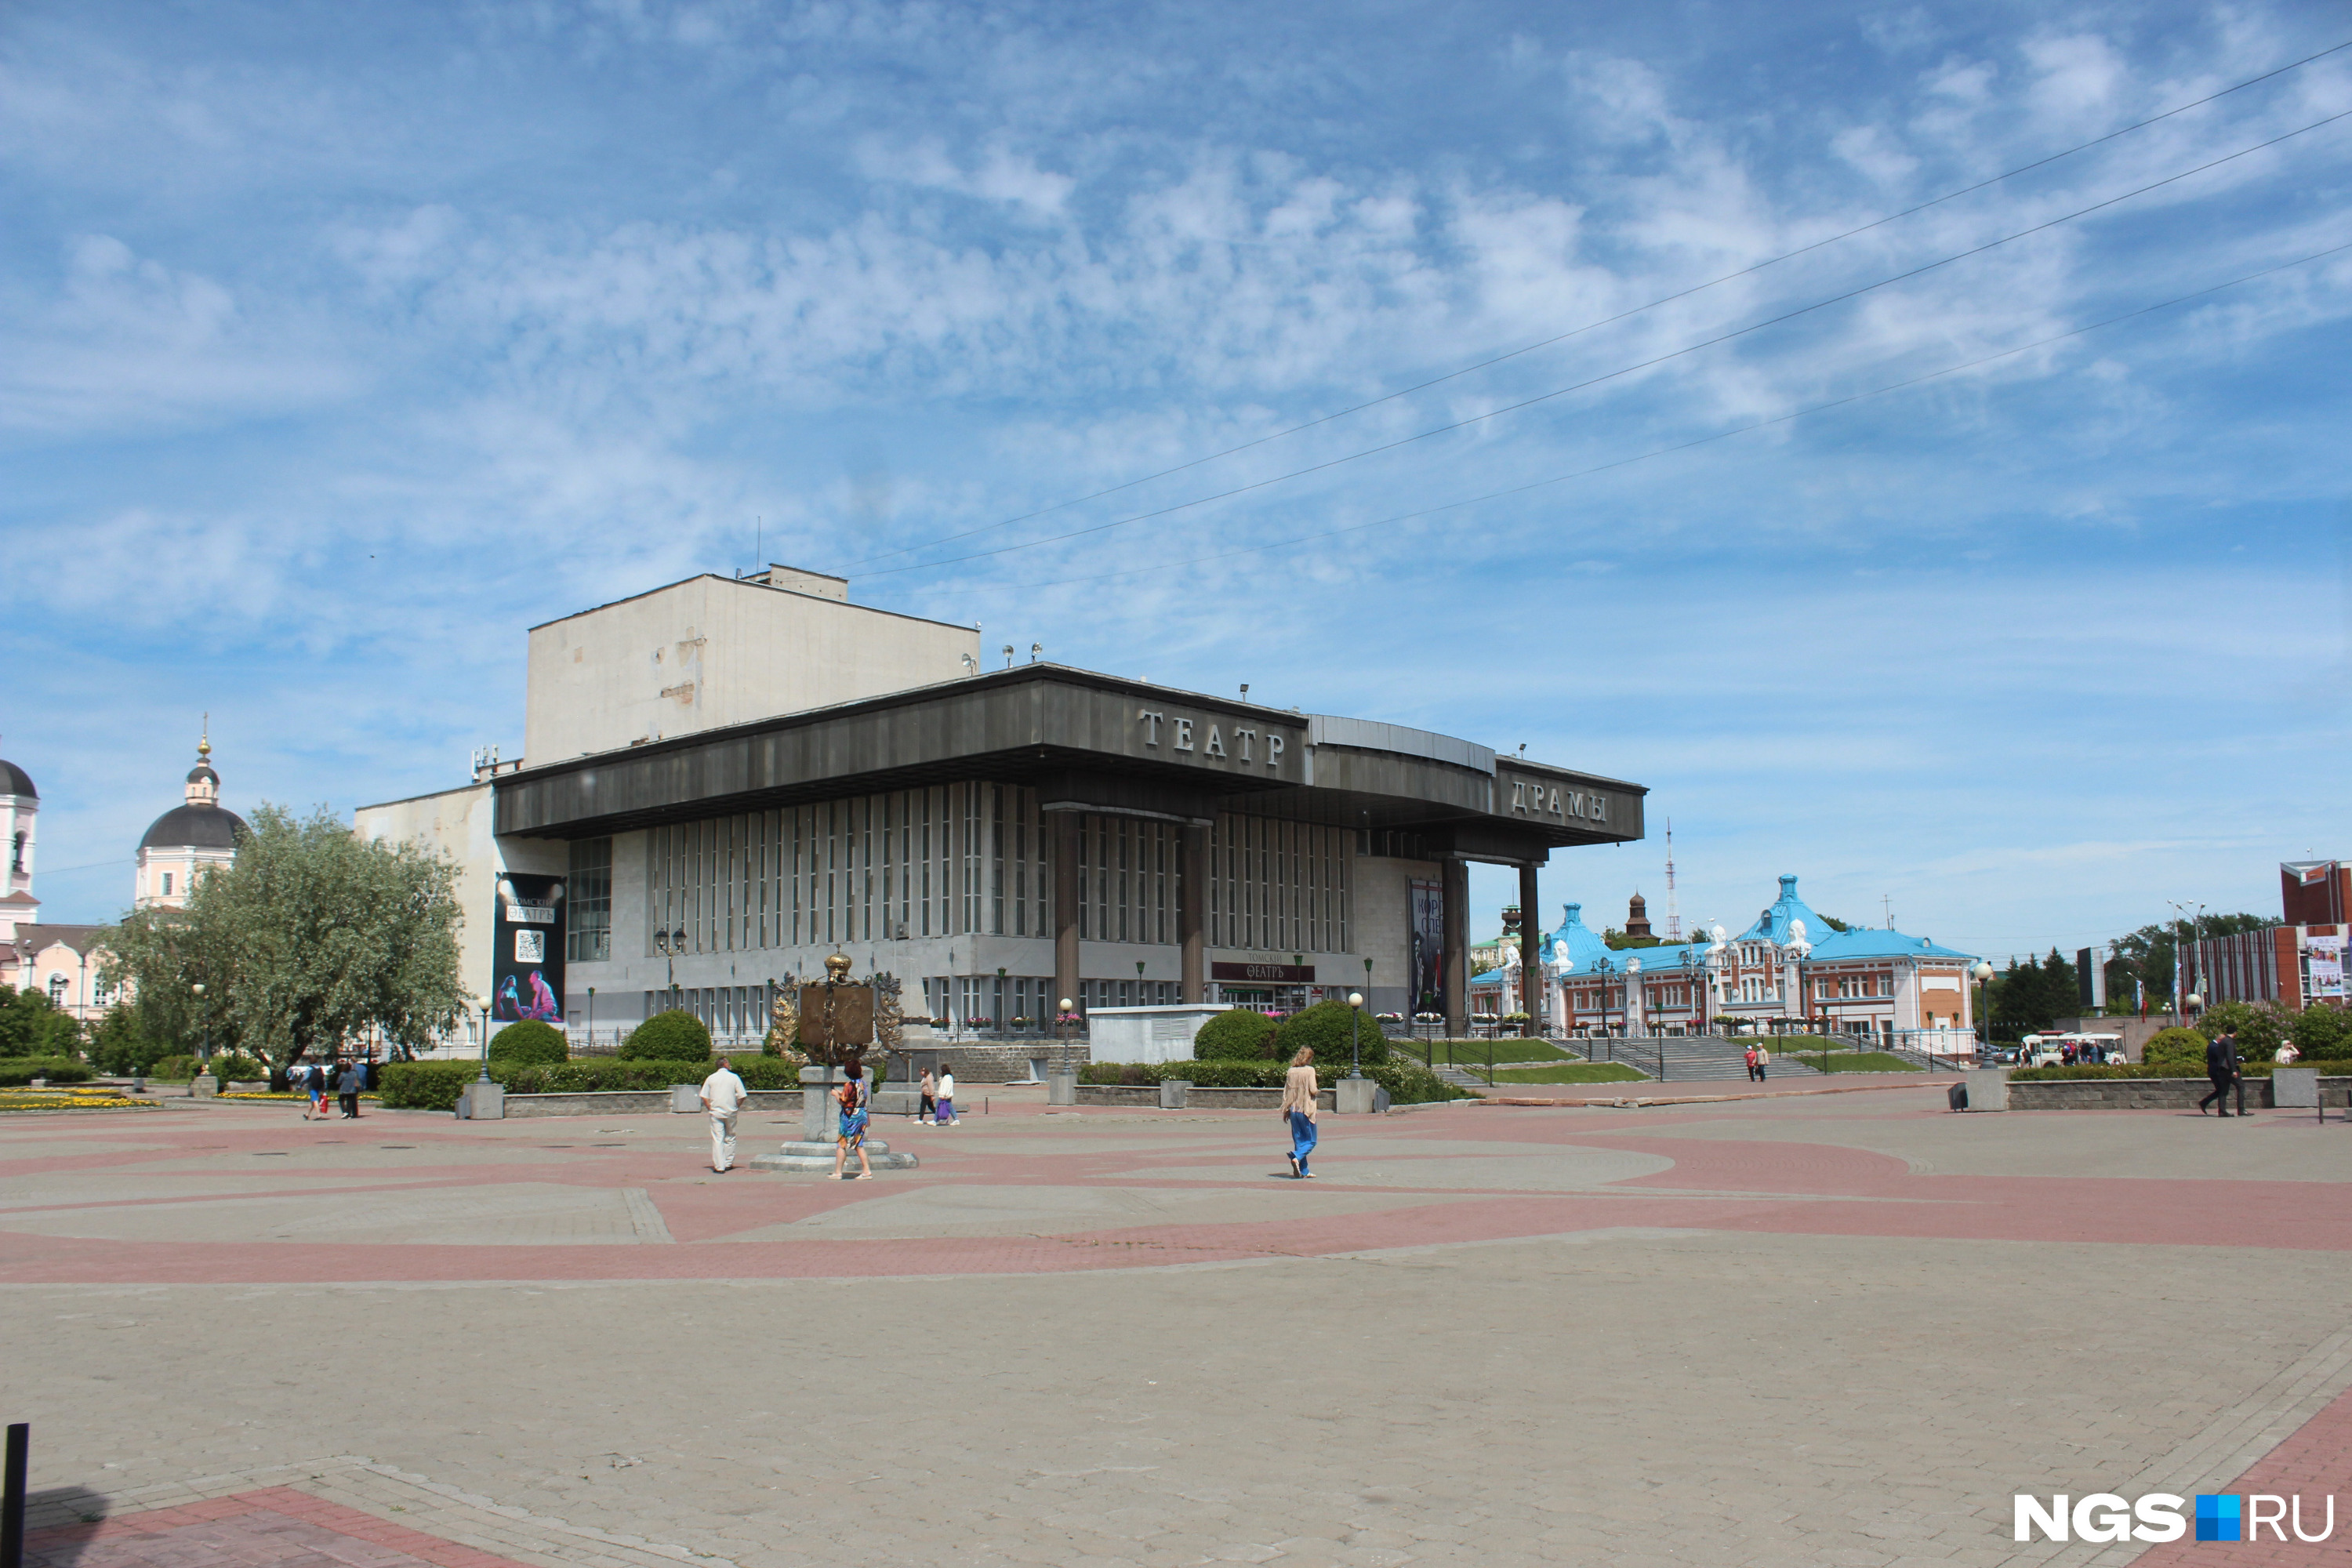 Театр Драмы в Томске располагается в самом центре города, недалеко от администрации области